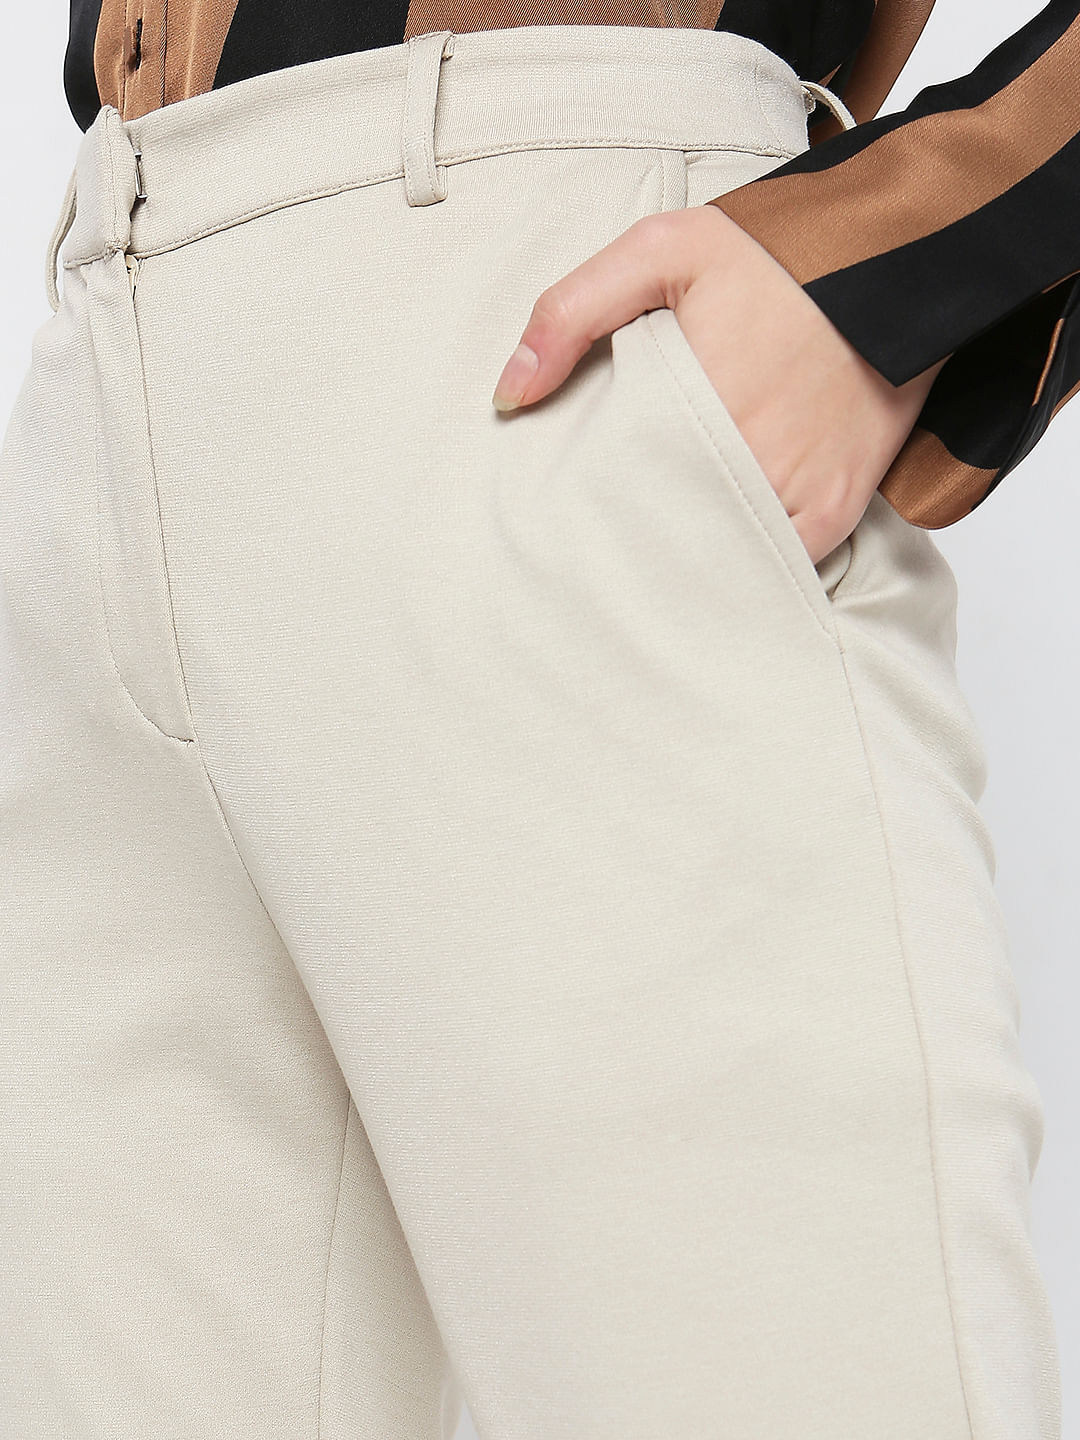 Cropped button pants - Women | Mango USA